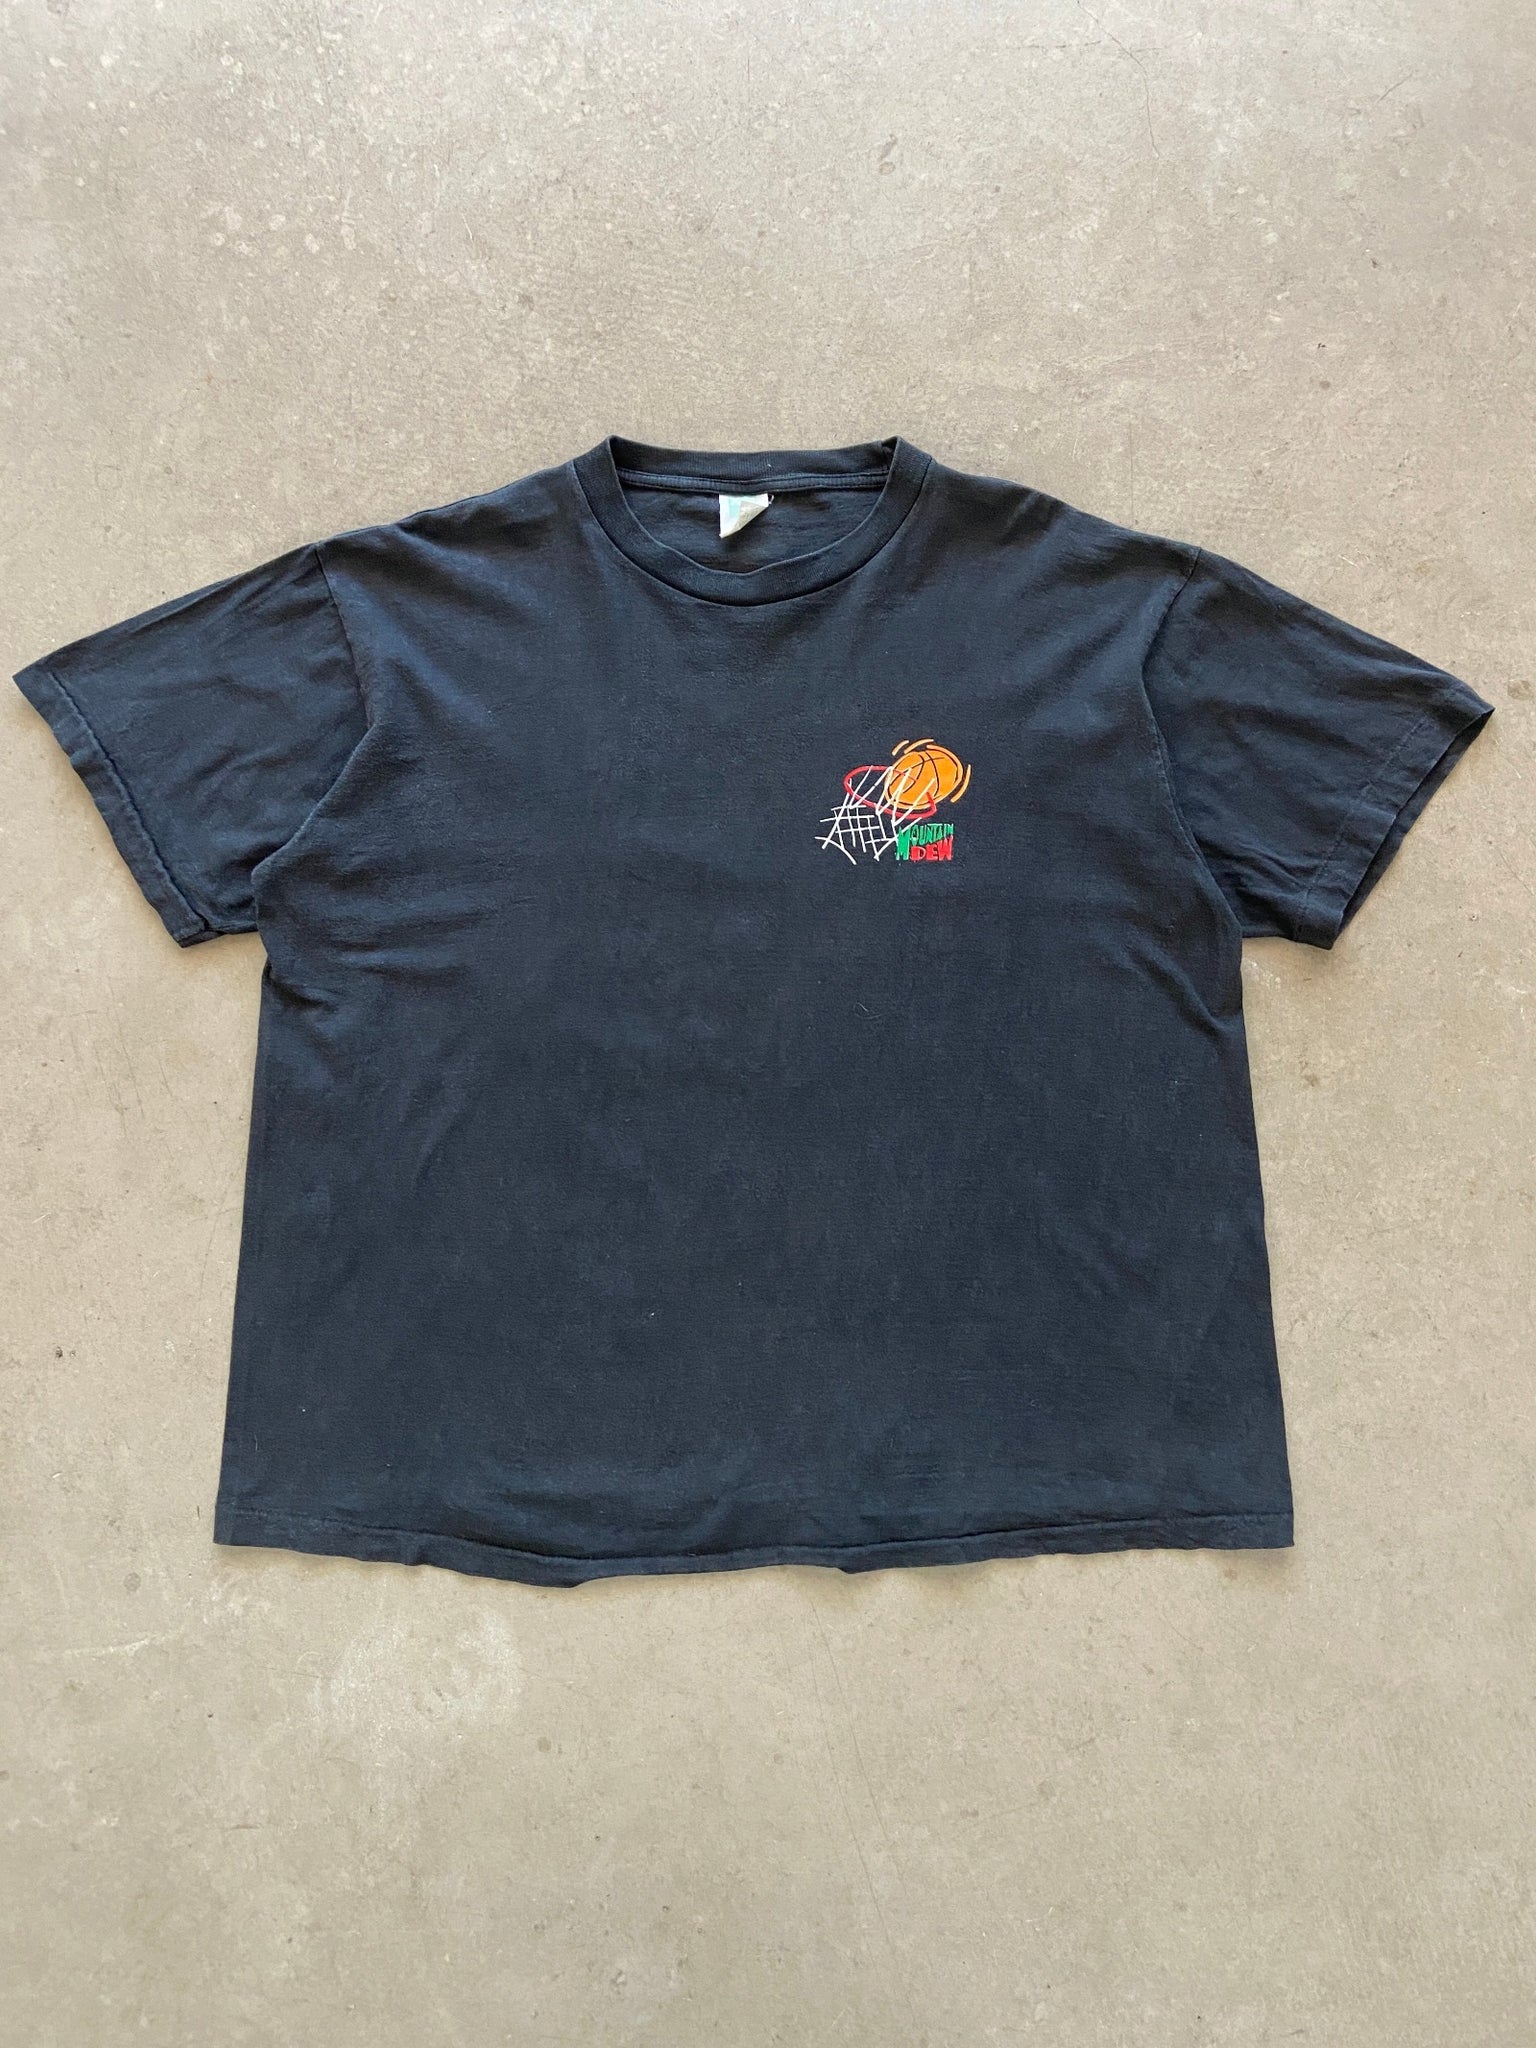 1990's Mountain Dew Basketball T-Shirt - XL